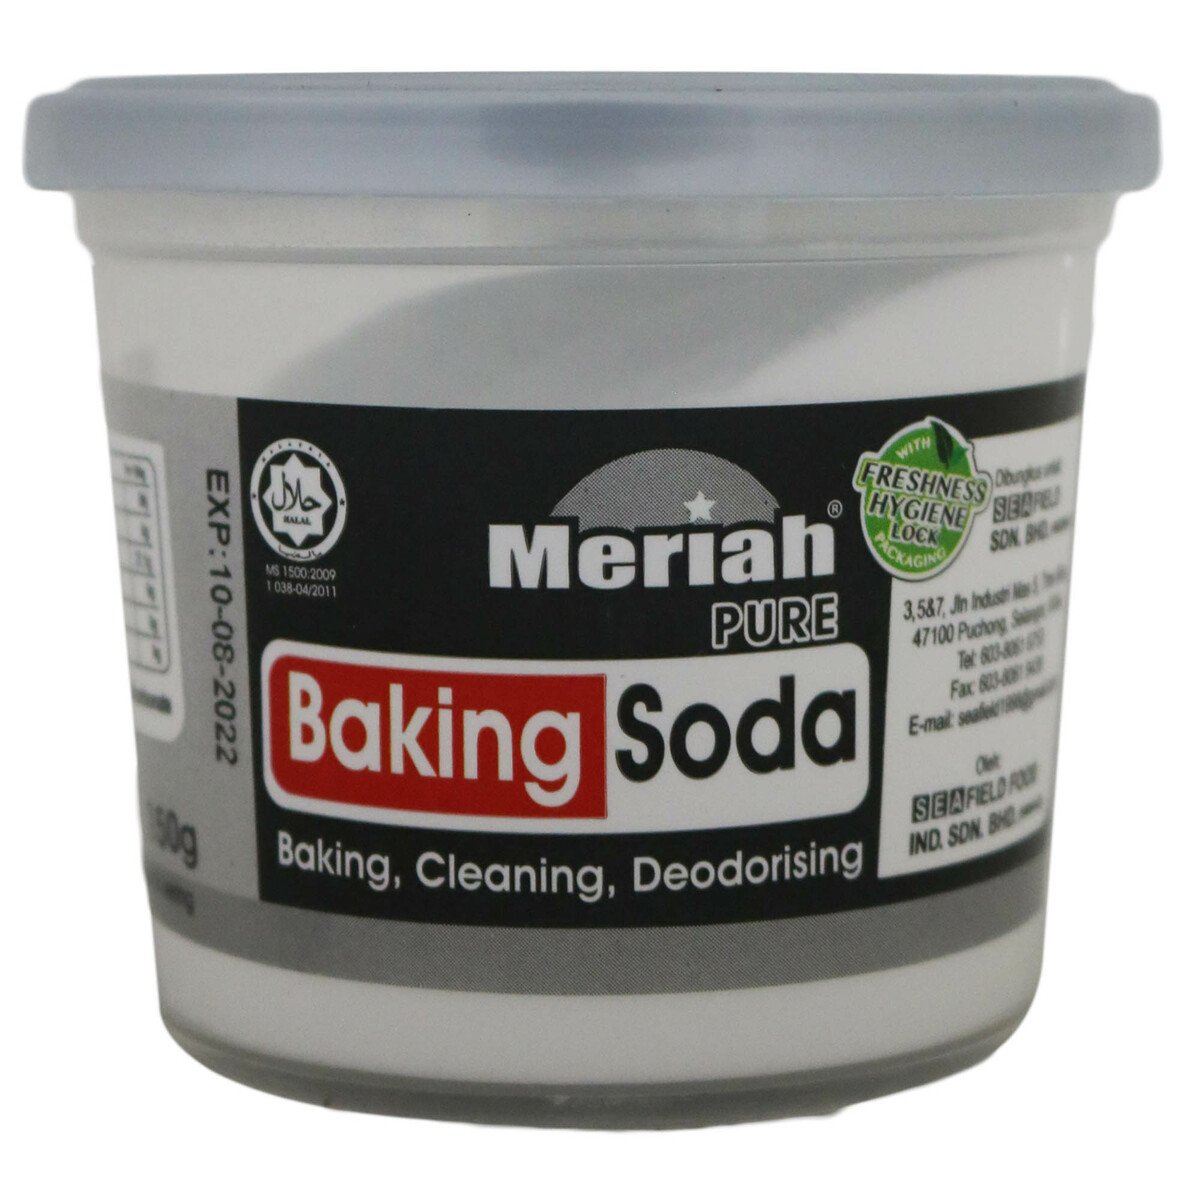 Meriah Baking Soda 150g